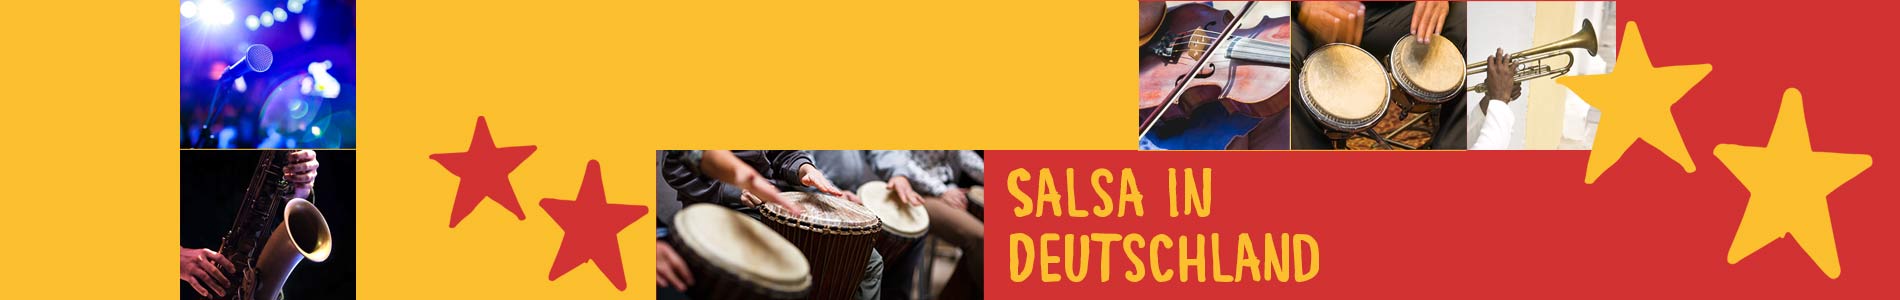 Salsa in Dentlein am Forst – Salsa lernen und tanzen, Tanzkurse, Partys, Veranstaltungen